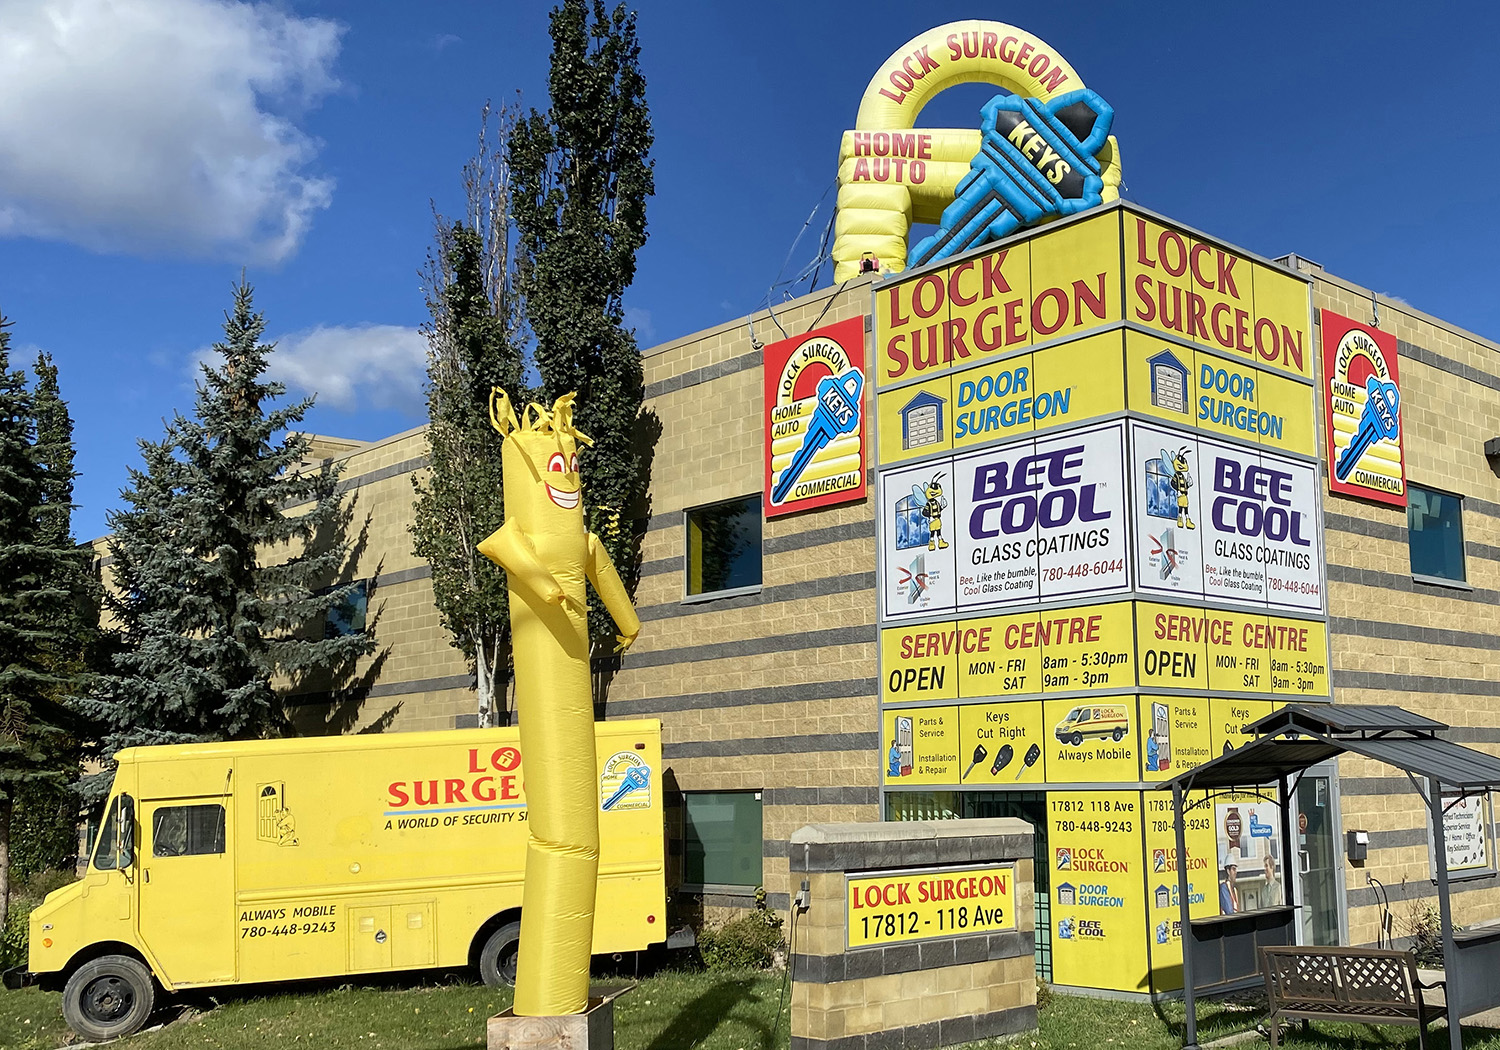 Edmonton Door Surgeon sales and service parts centre location